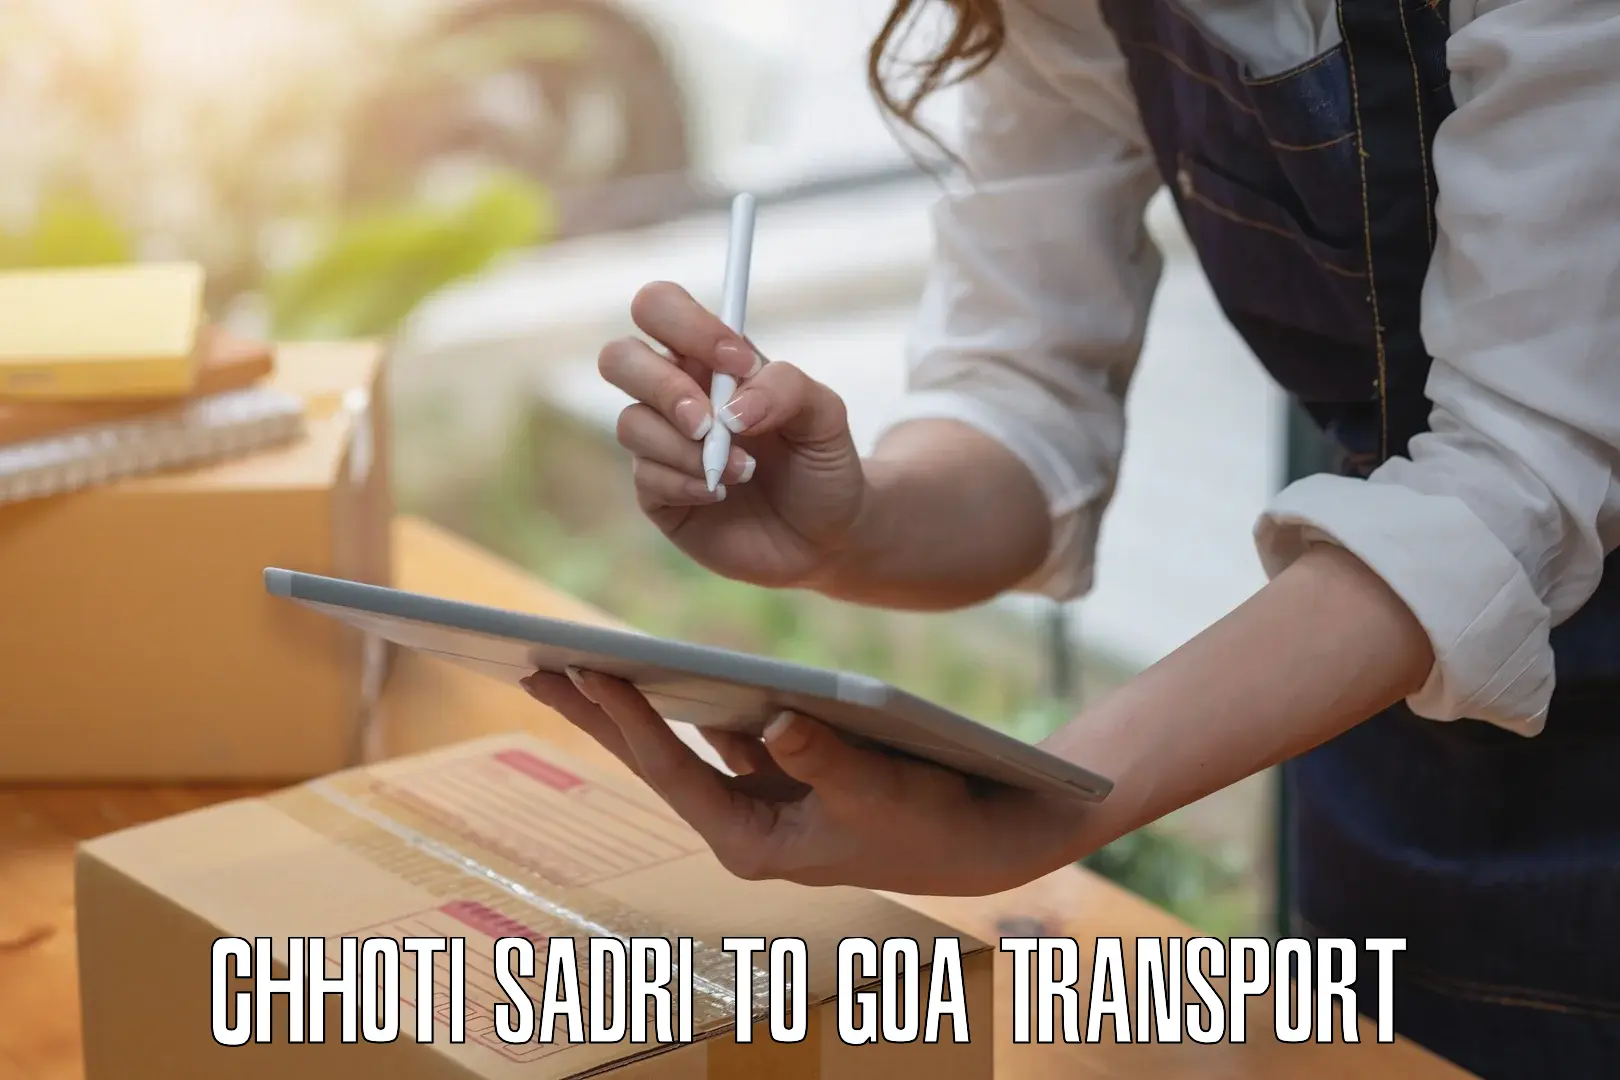 Scooty transport charges Chhoti Sadri to Bardez